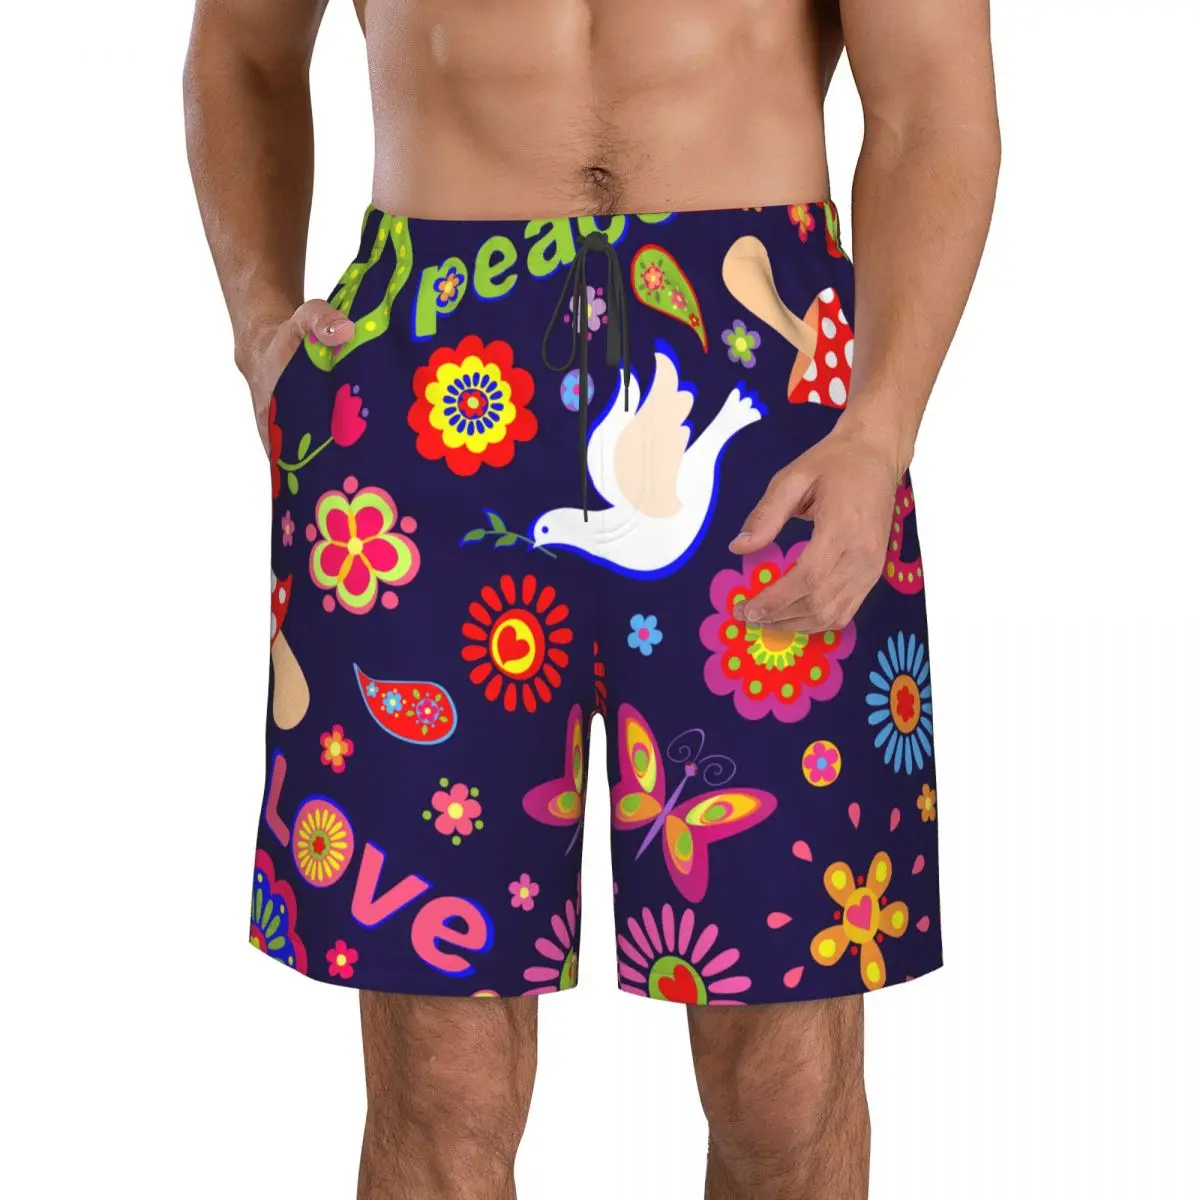 

Быстросохнущие шорты для плавания для мужчин, одежда для плавания, Мужской купальный костюм, плавки, летняя пляжная одежда для купания, мир, хиппи, цветочный символ, голубь